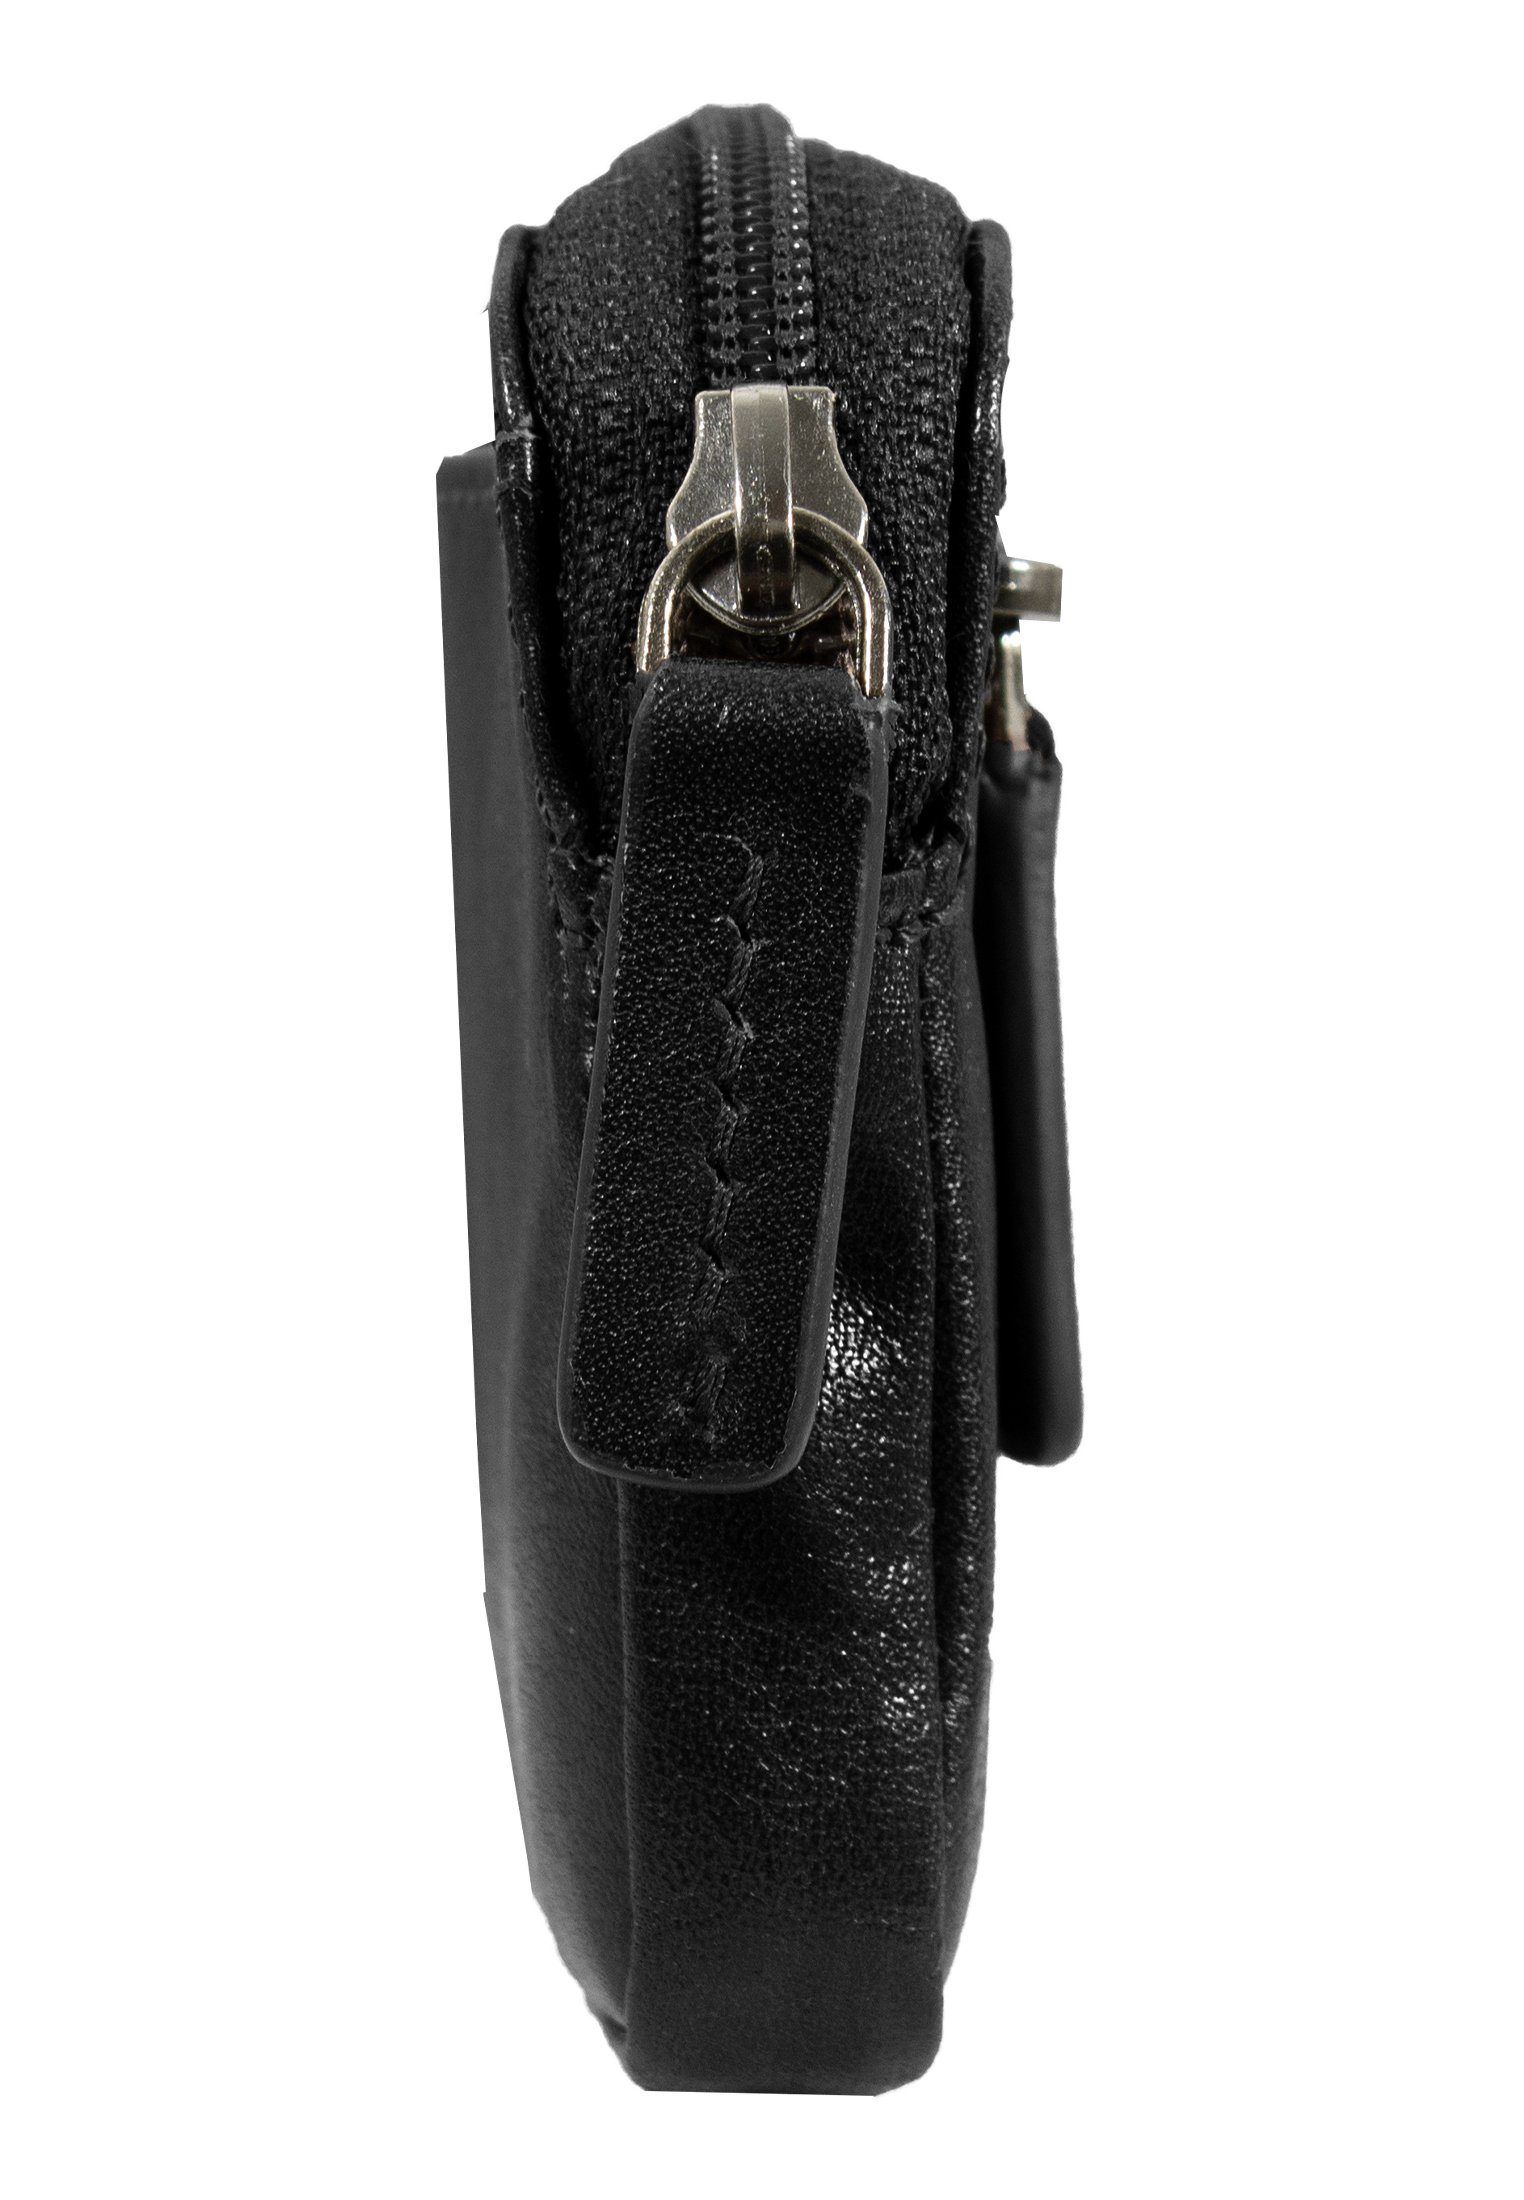 COUNTRY aus Schlüsseltasche M hochwertigem Rindleder schwarz Büffel Zipper, Schlüsseletui Braun